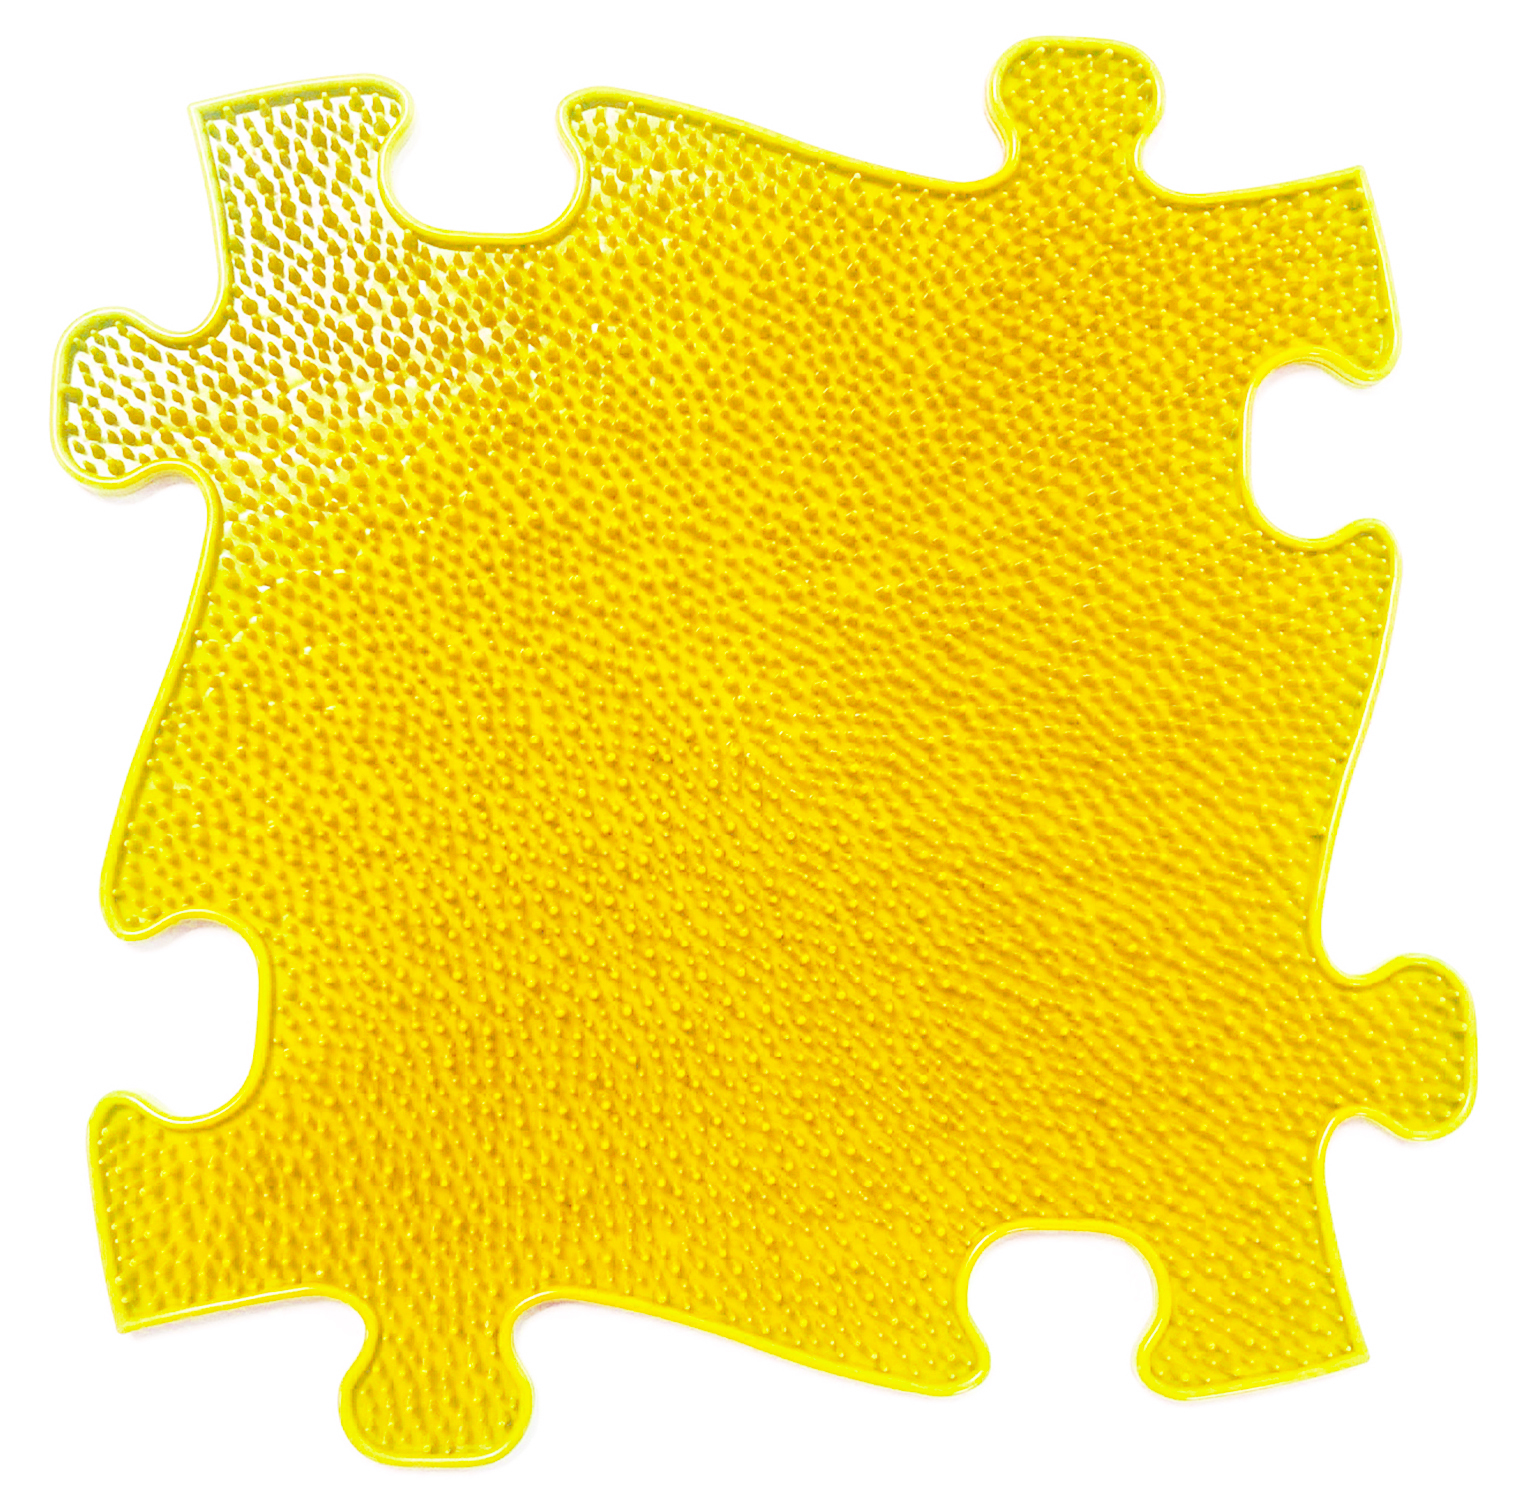 фото Модульный коврик играпол травка большой желтый